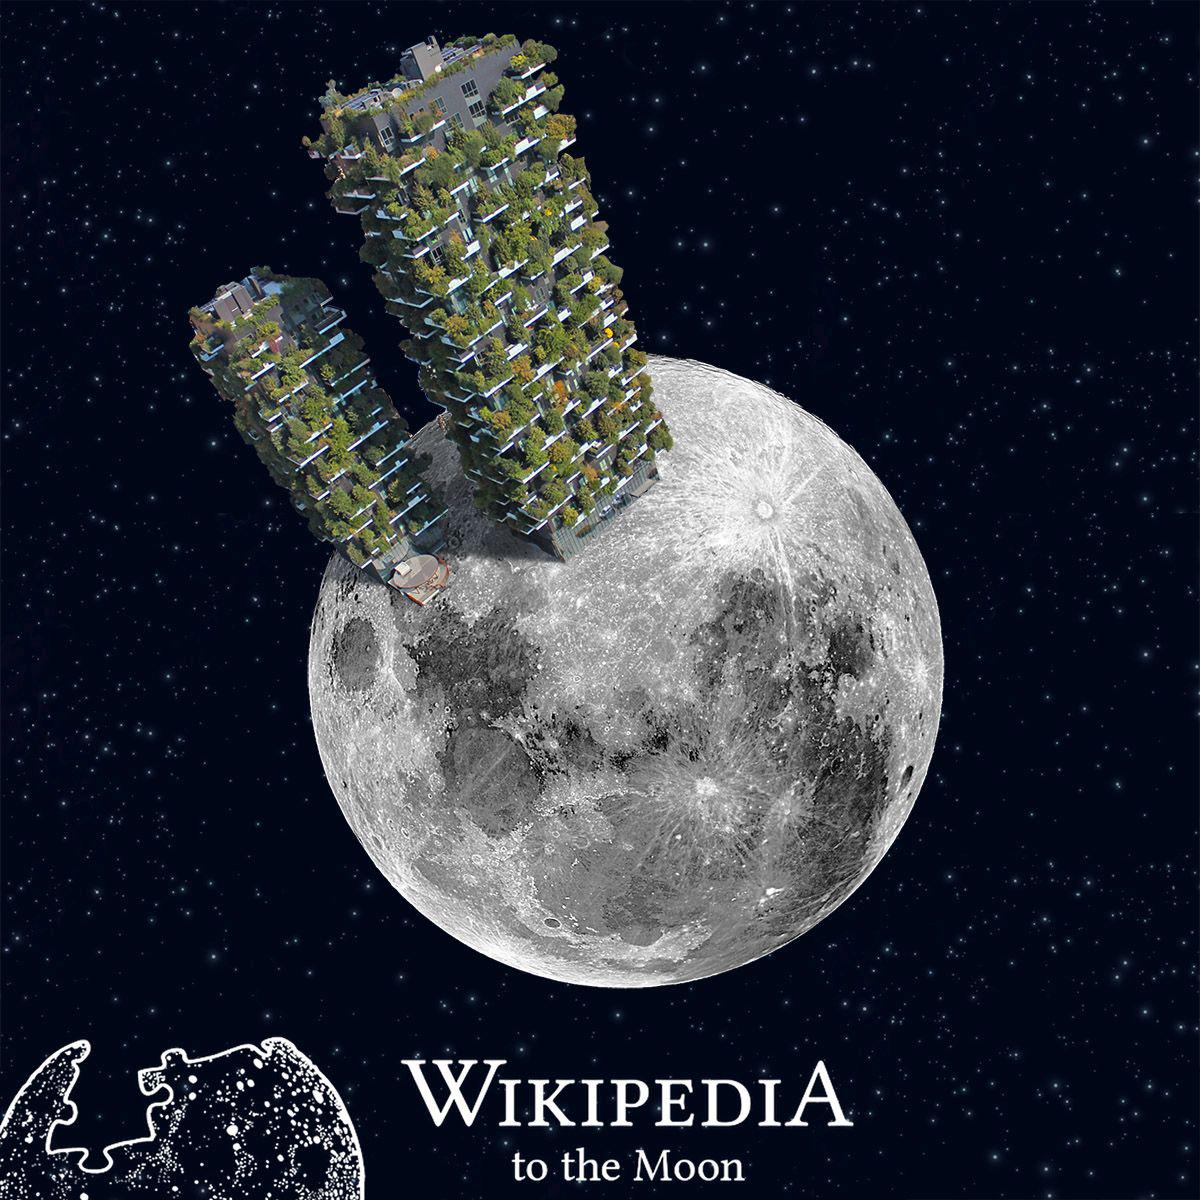 Il Bosco Verticale in partenza sulla Luna con la vetrina di Wikipedia